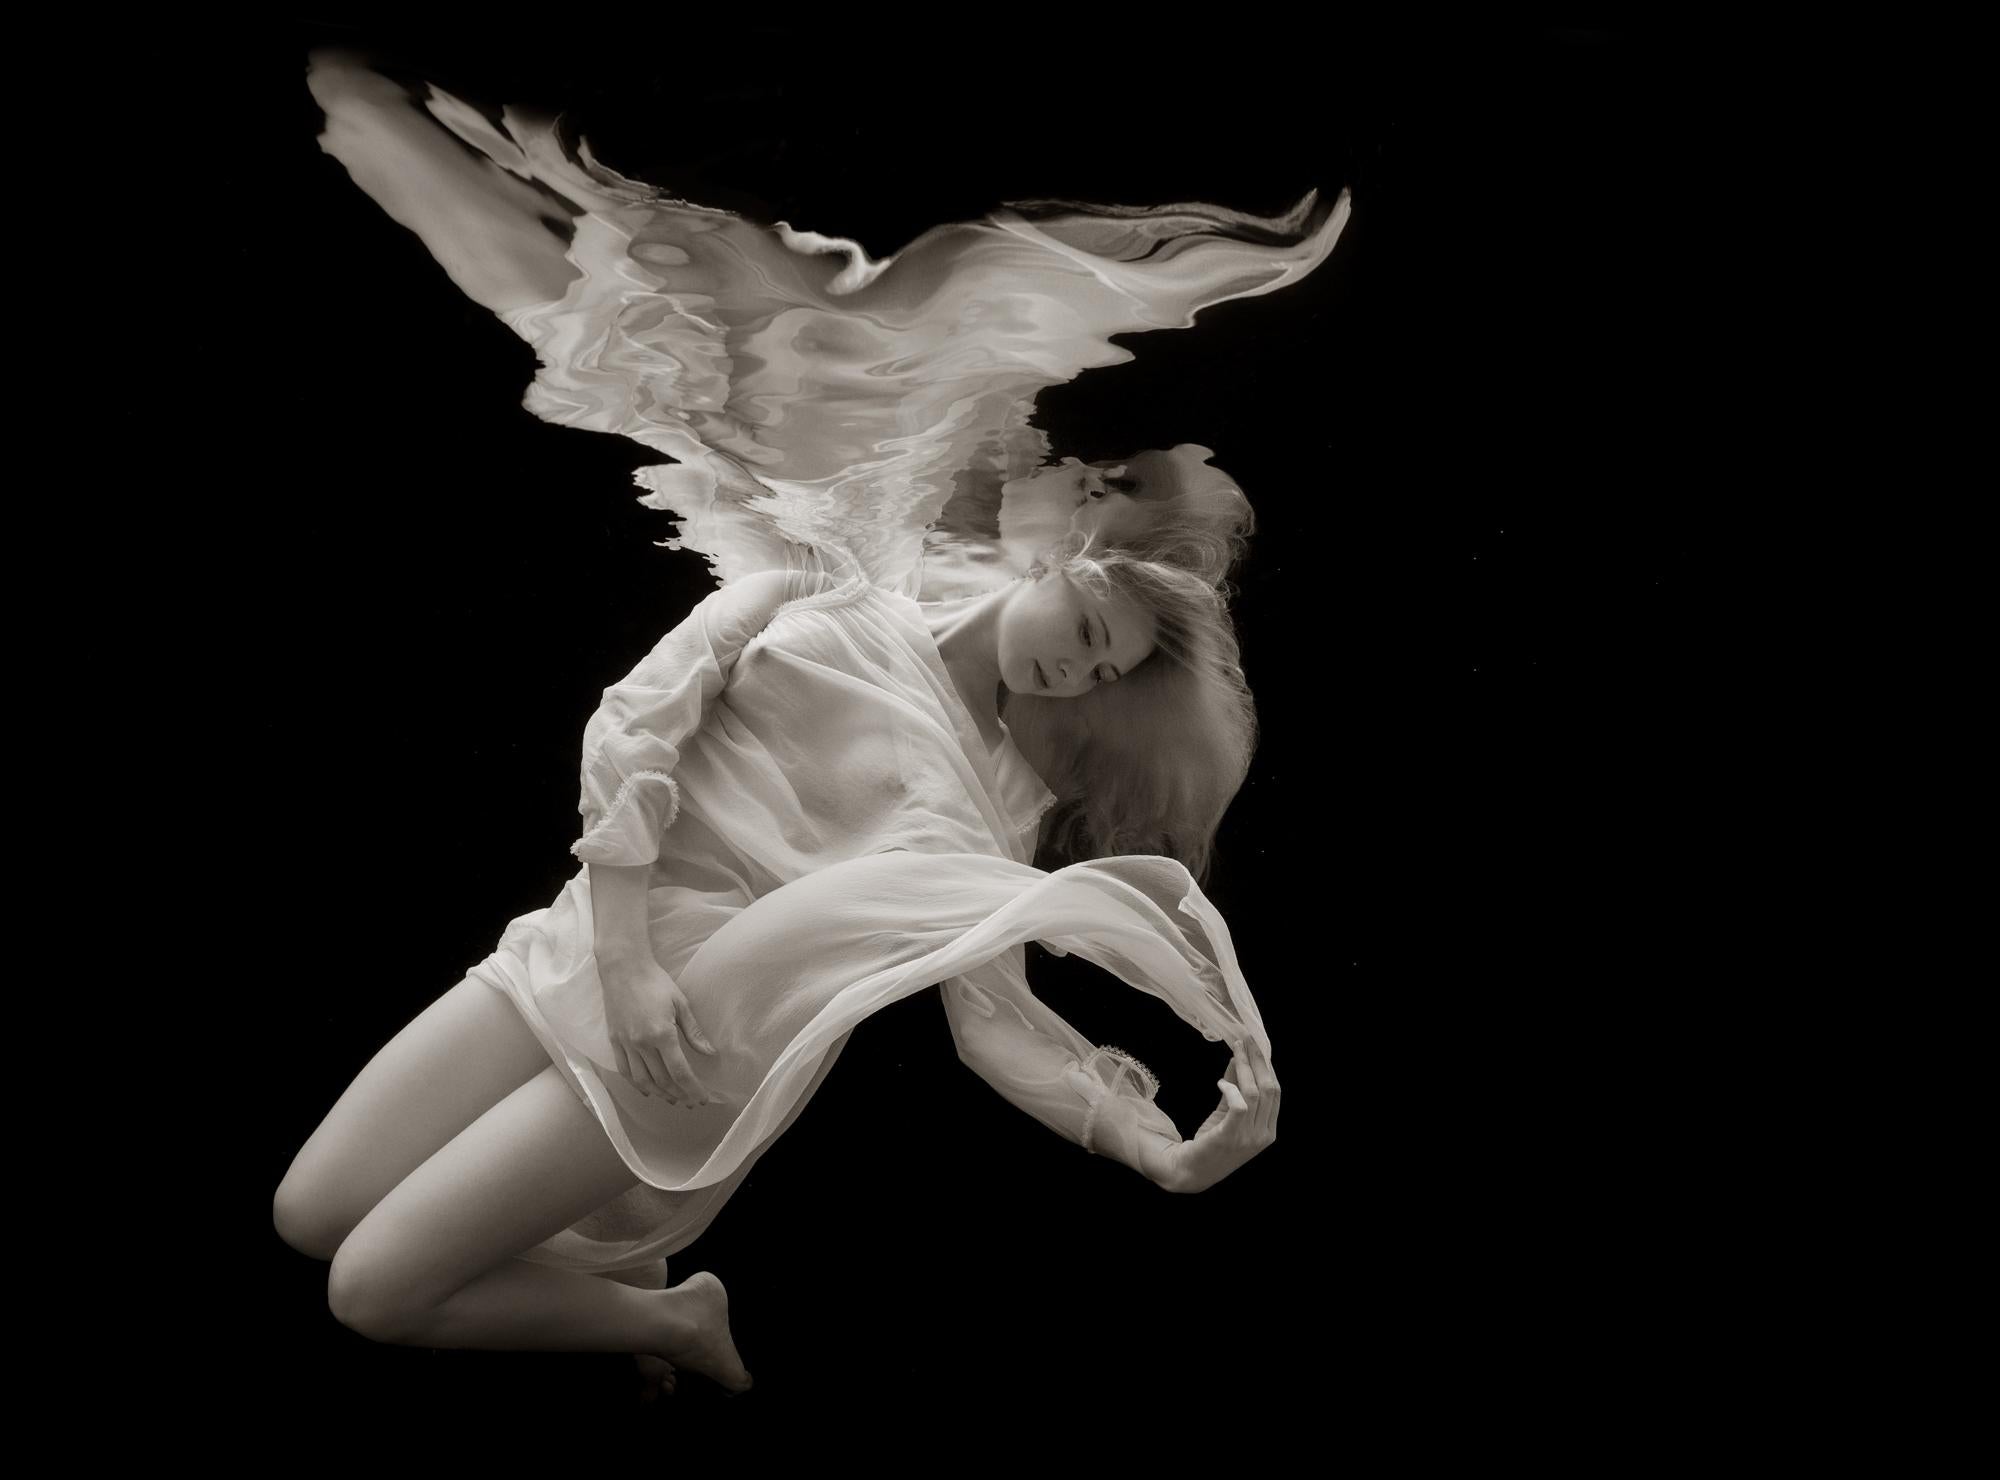 Alex Sher Nude Photograph – Mermaid Angel - Unterwasserfotografie - Druck auf Papier 26" x 35" 